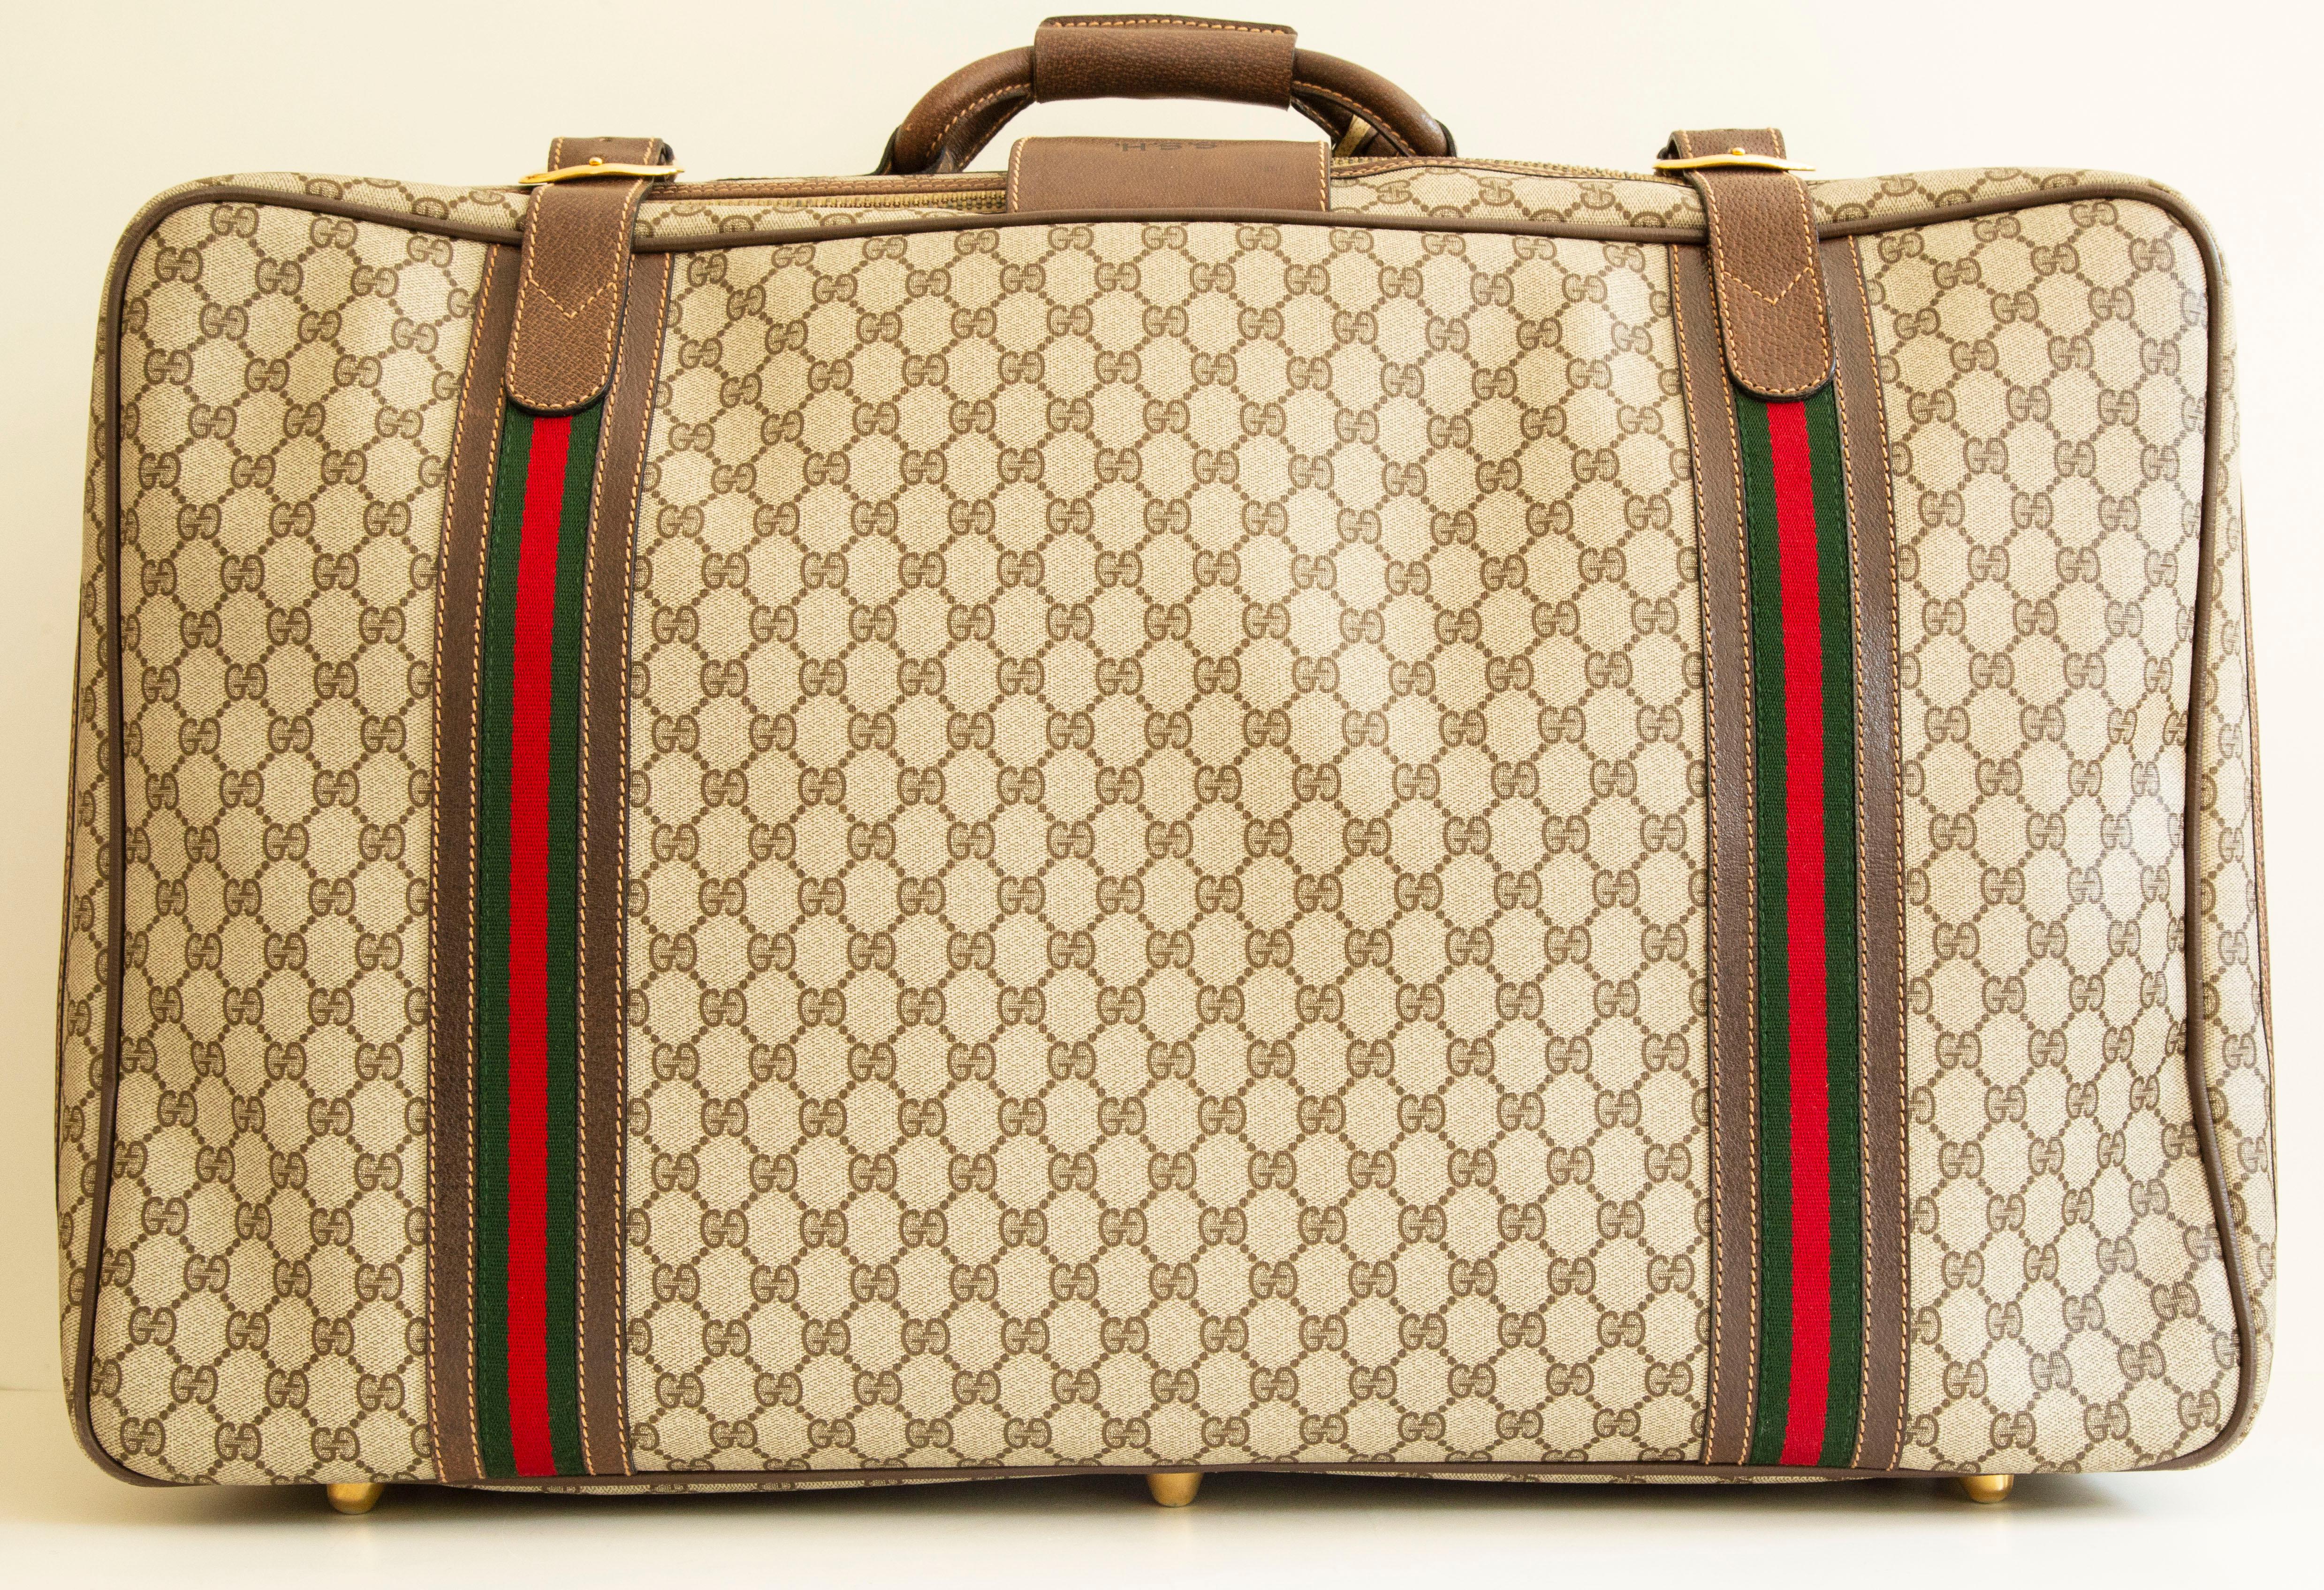 Ein authentischer großer Vintage-Koffer von Gucci. Das Äußere des Koffers besteht aus klassischem GG Canvas, braunem Leder mit Gucci-Rennstreifen und goldfarbenen Beschlägen. Die Tasche kann mit einem Reißverschluss geschlossen und mit braunen